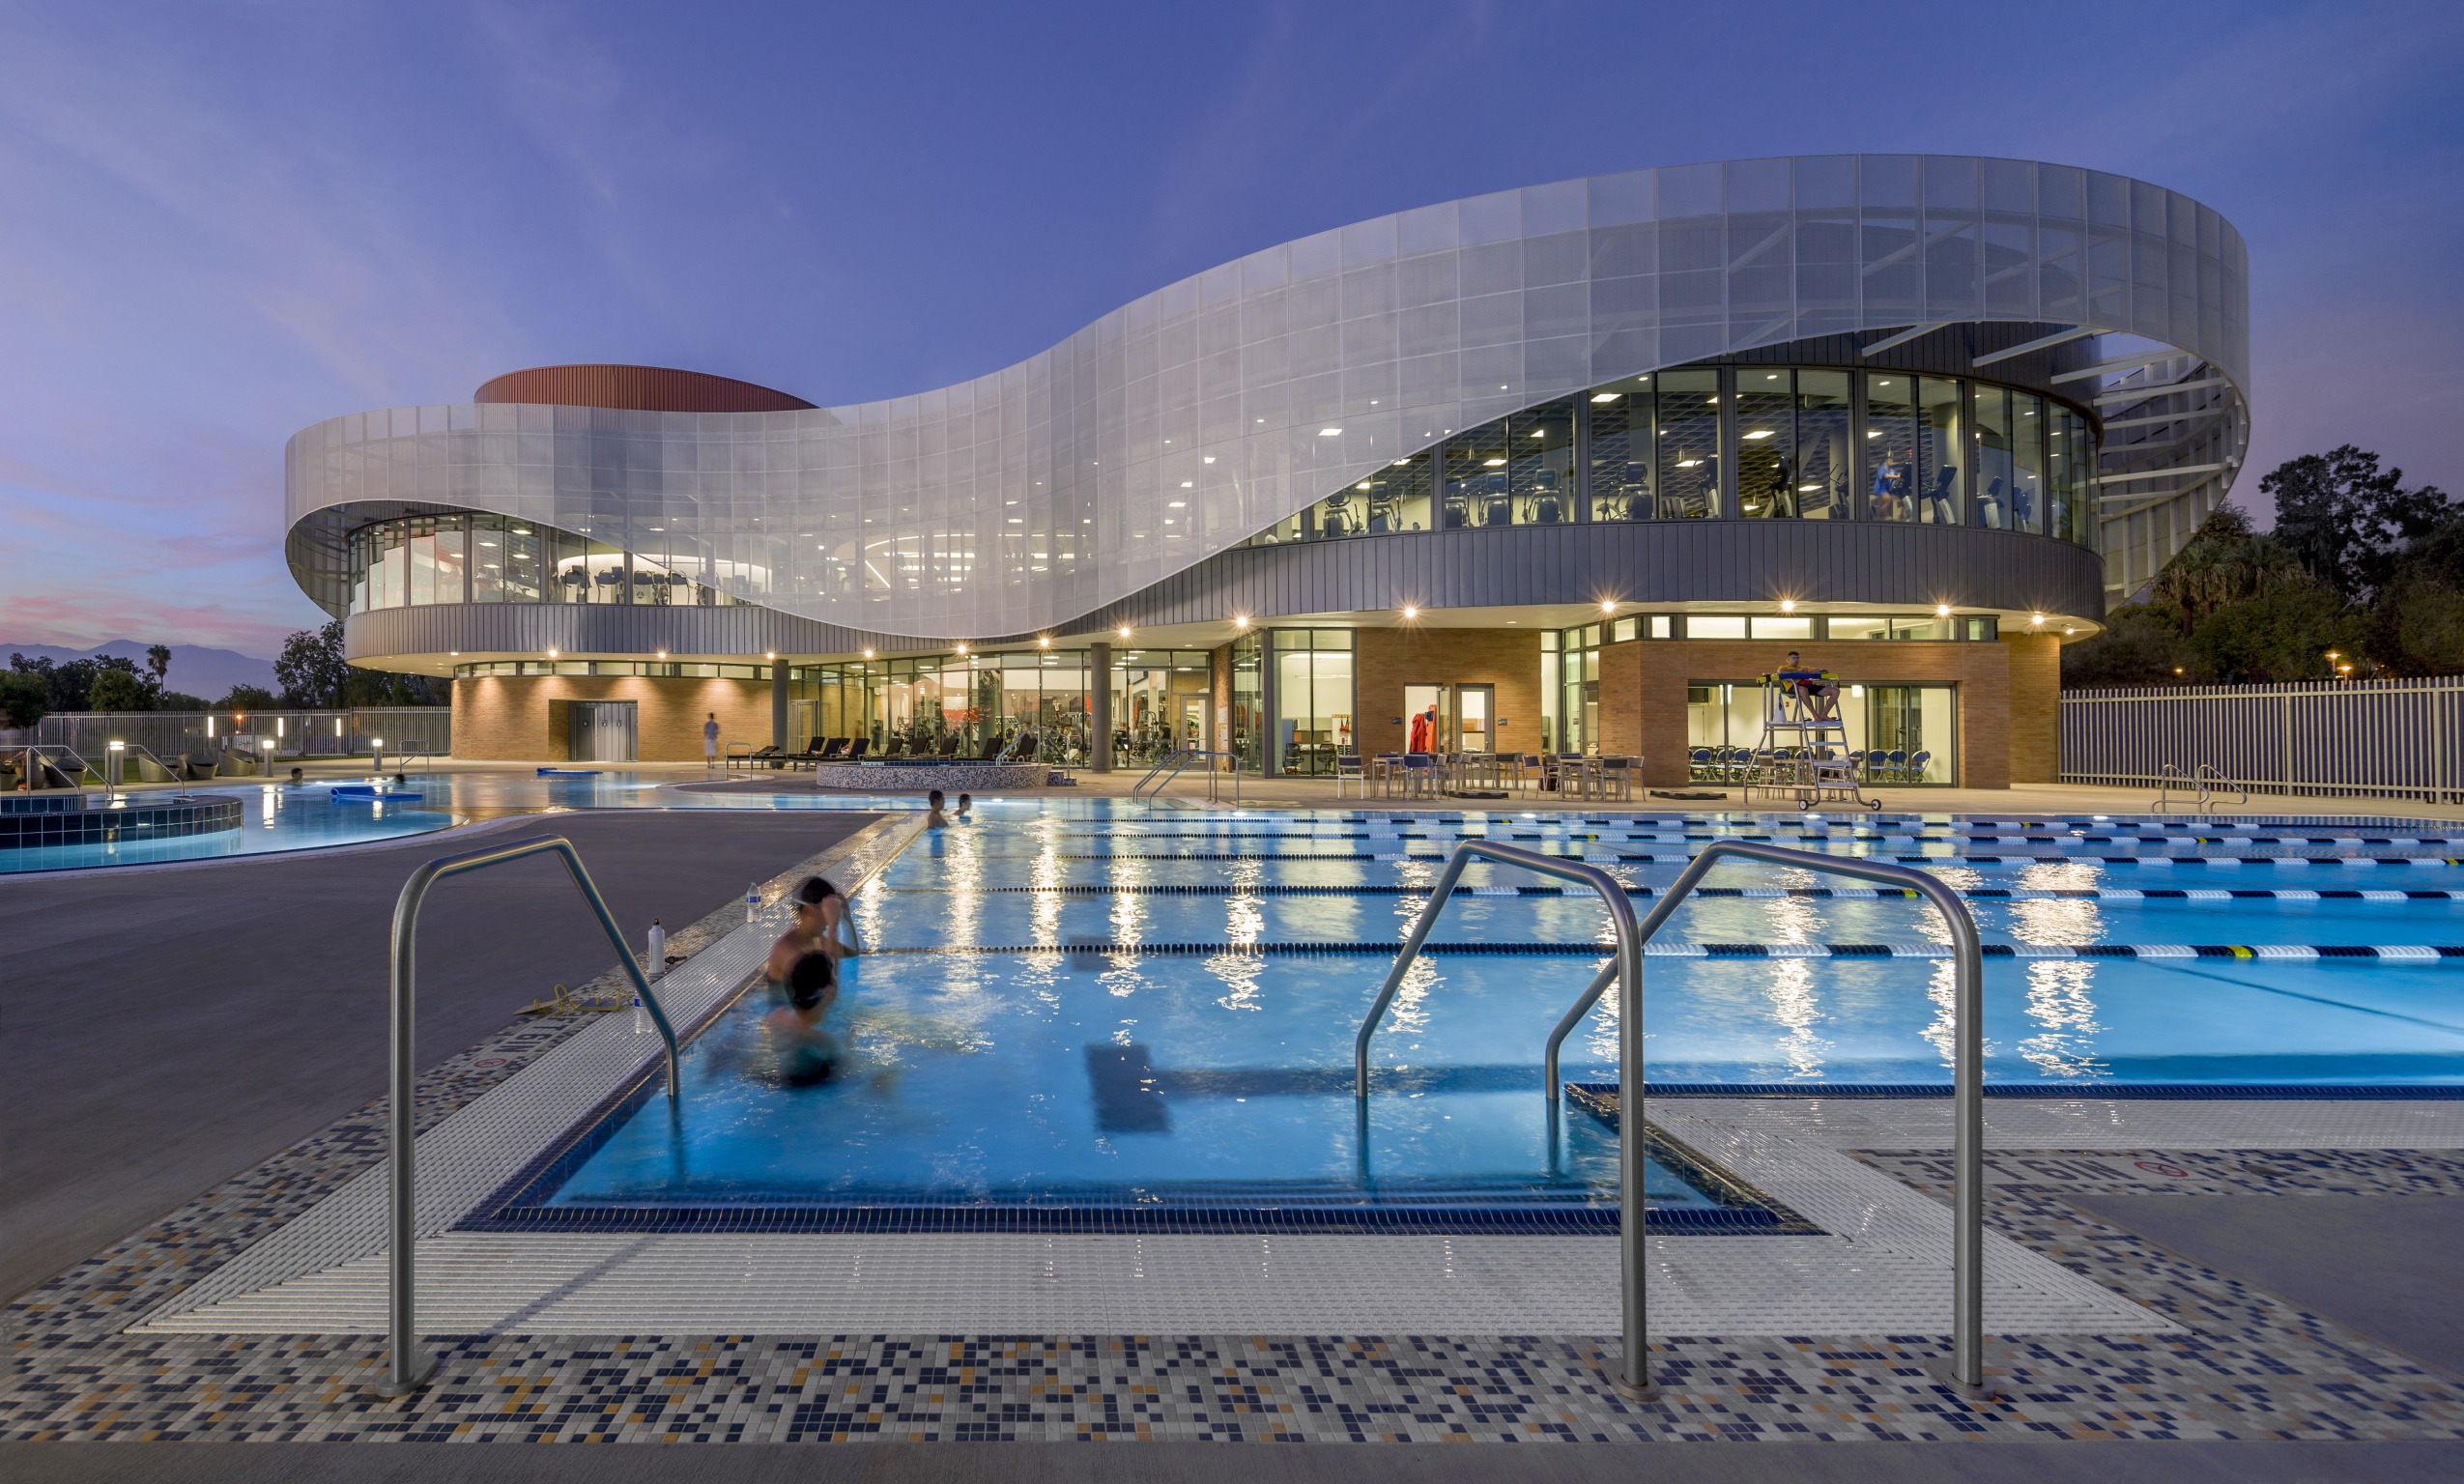 Большой спортивный центр. Голландия архитектура спортсооружения. Спорткомплекс в Риверсайде, Калифорния. Спортивный центр с бассейном в Германии архитектура. Многофункциональный центр STADSHUISNIEUWEGEIN, Нидерланды.